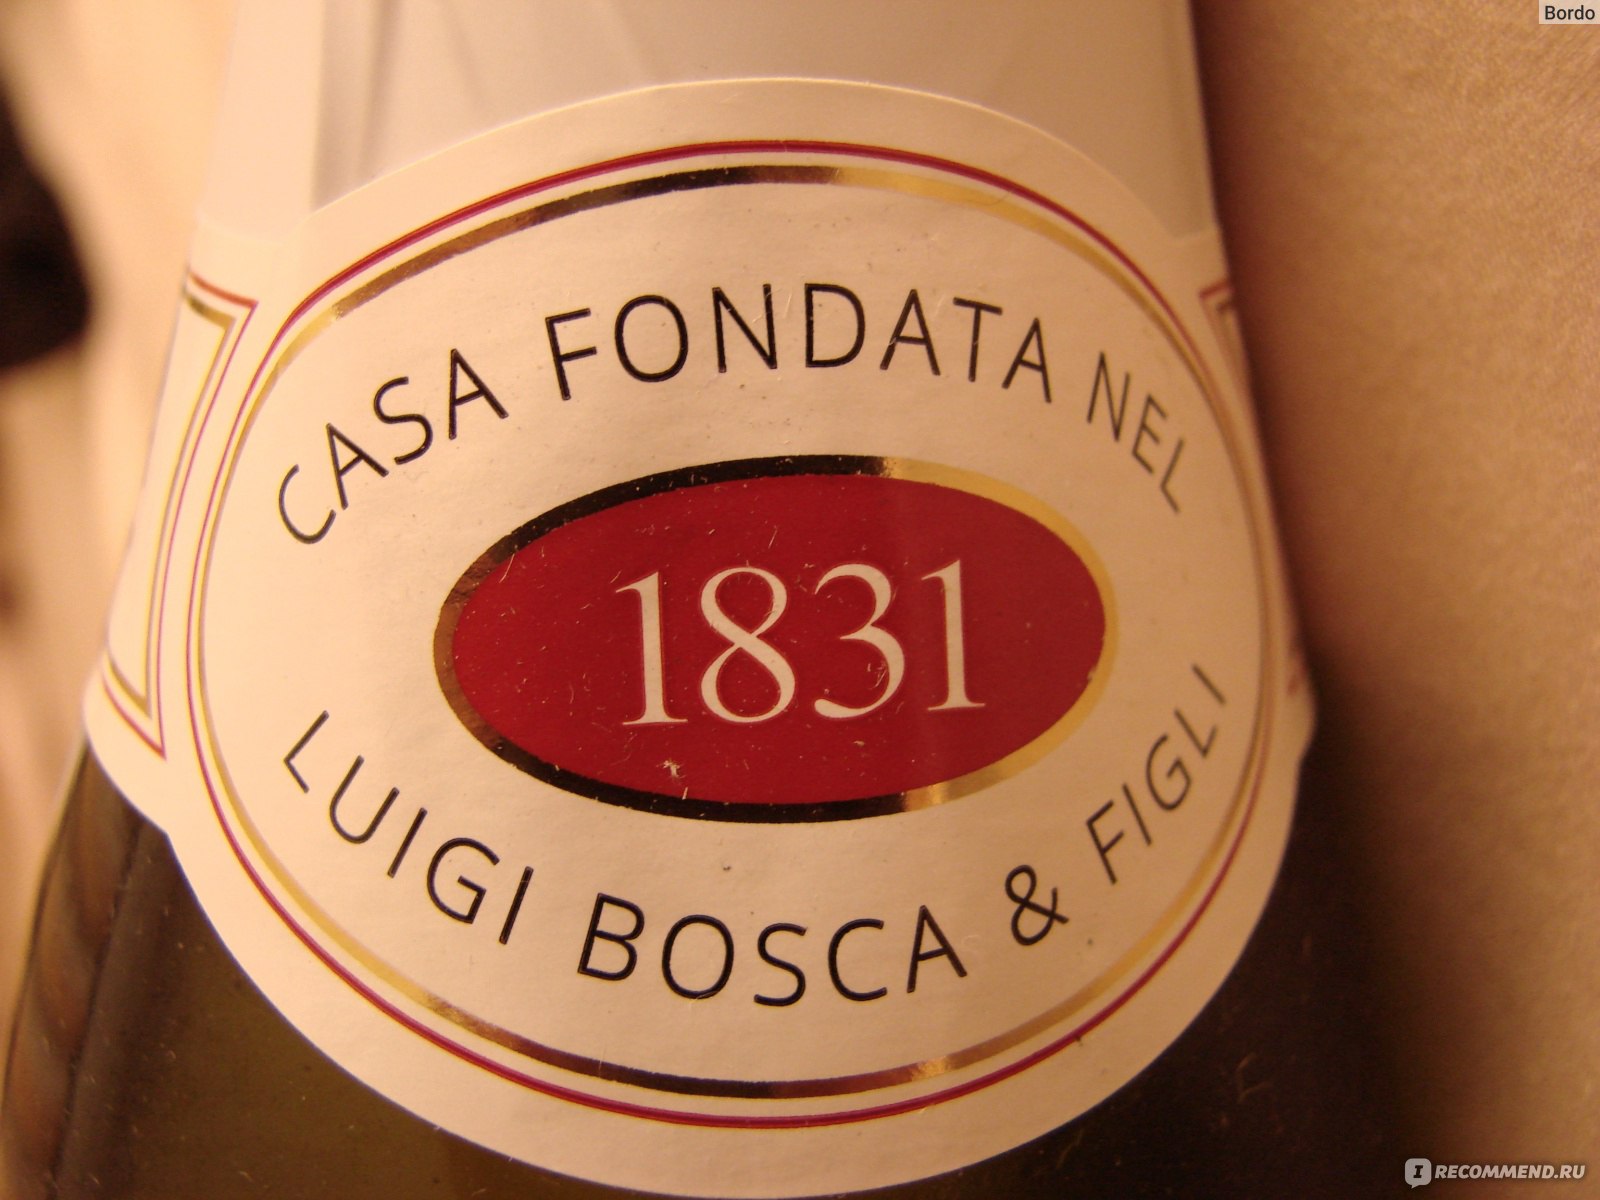 Шампанское боско безалкогольное. Bosca Prosecco. Напиток Bosca белый полусладкий. Вино игристое сладкое Bosca Bosca. Игристое вино Боско белое полусладкое.